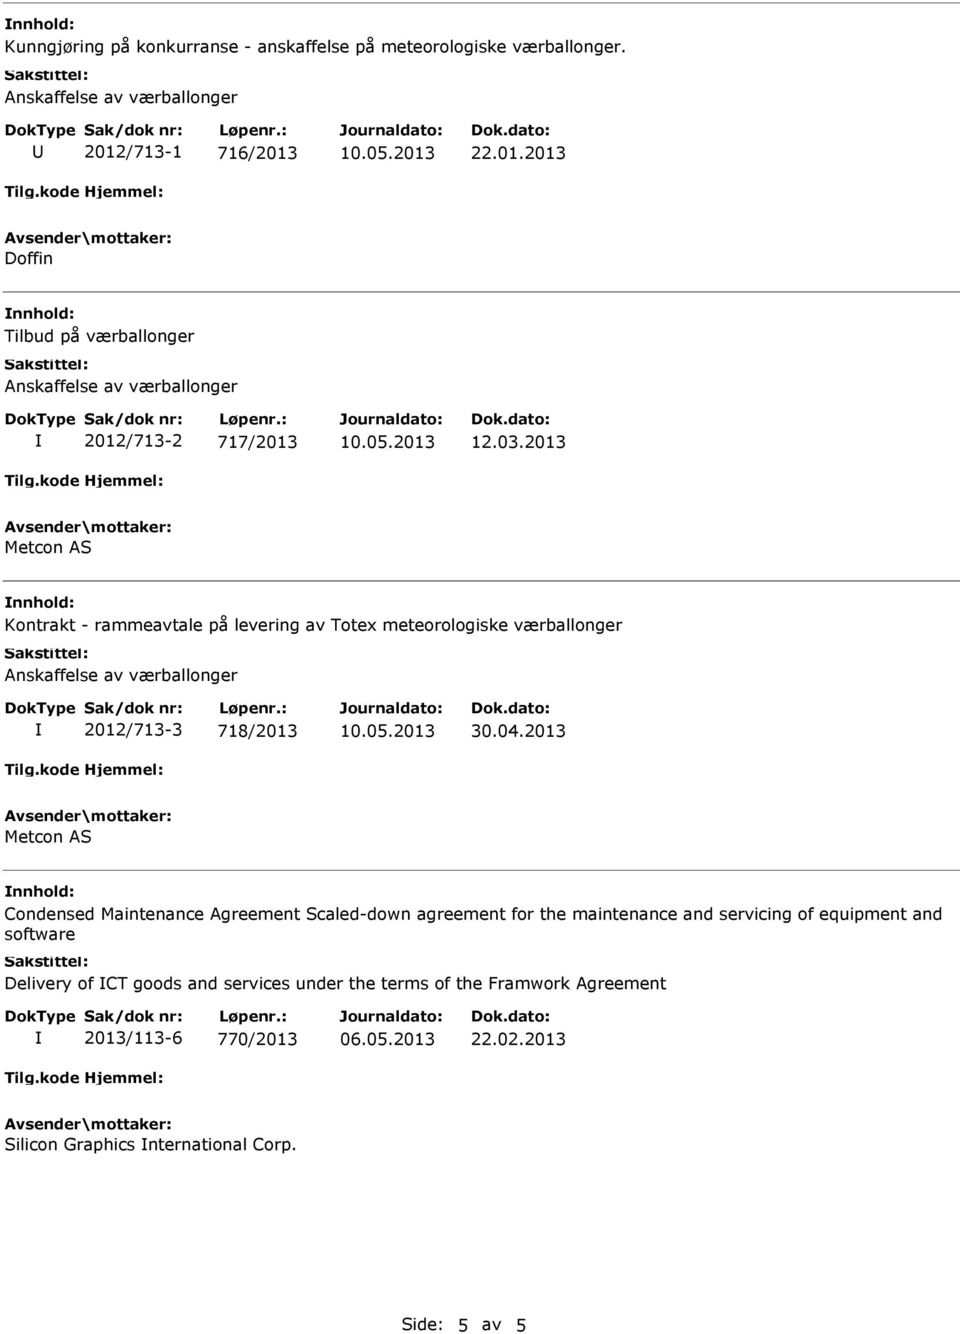 2013 Metcon AS Kontrakt - rammeavtale på levering av Totex meteorologiske værballonger 2012/713-3 718/2013 Metcon AS Condensed